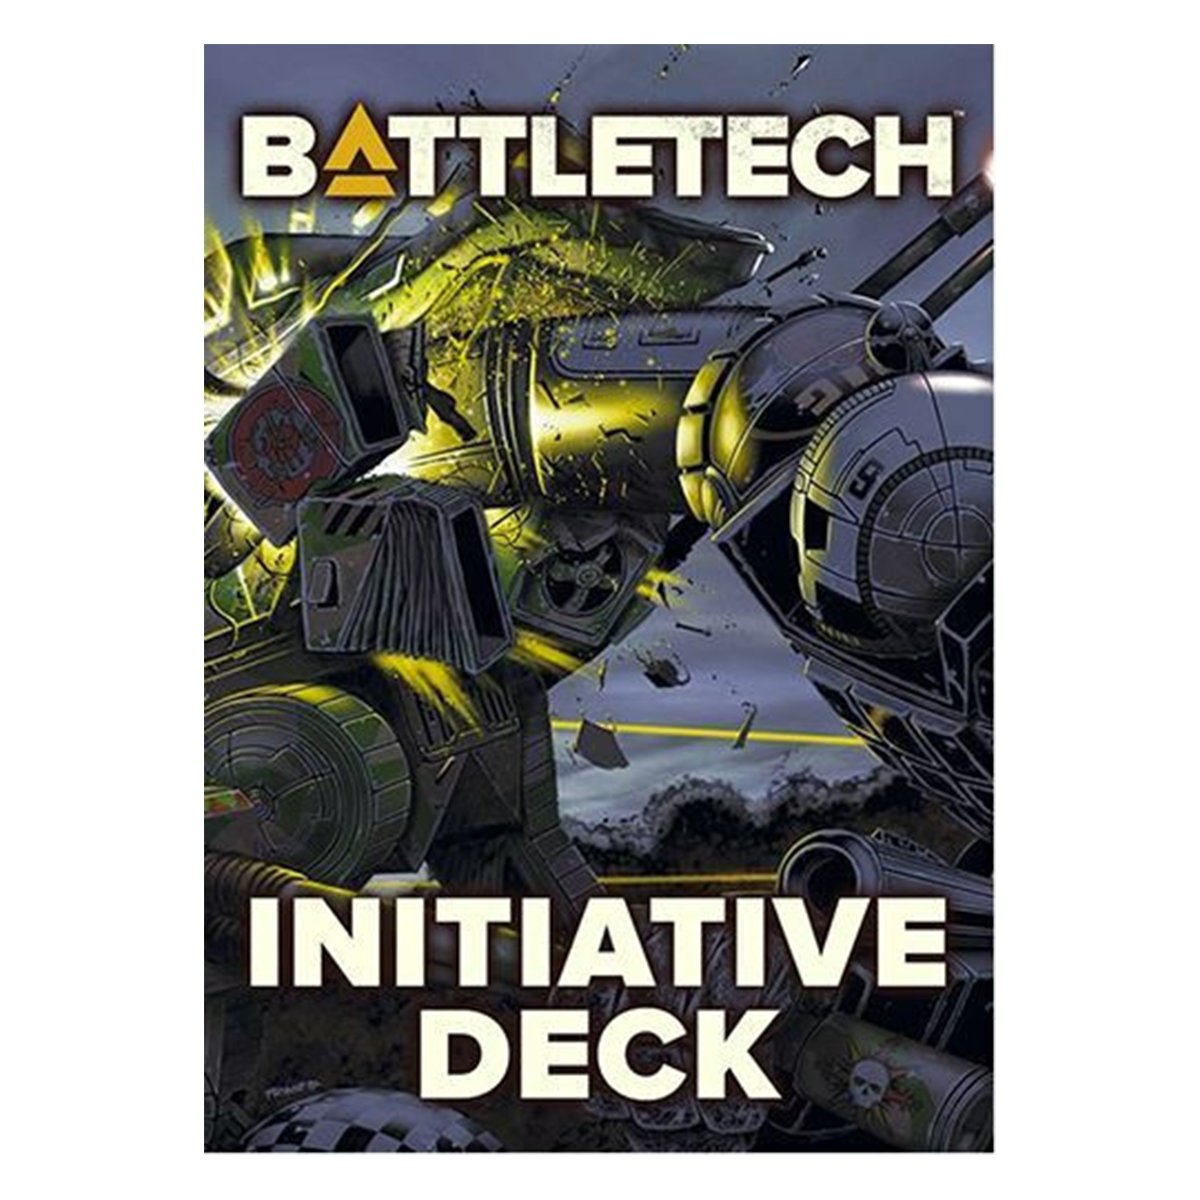 Battletech Initiative Deck